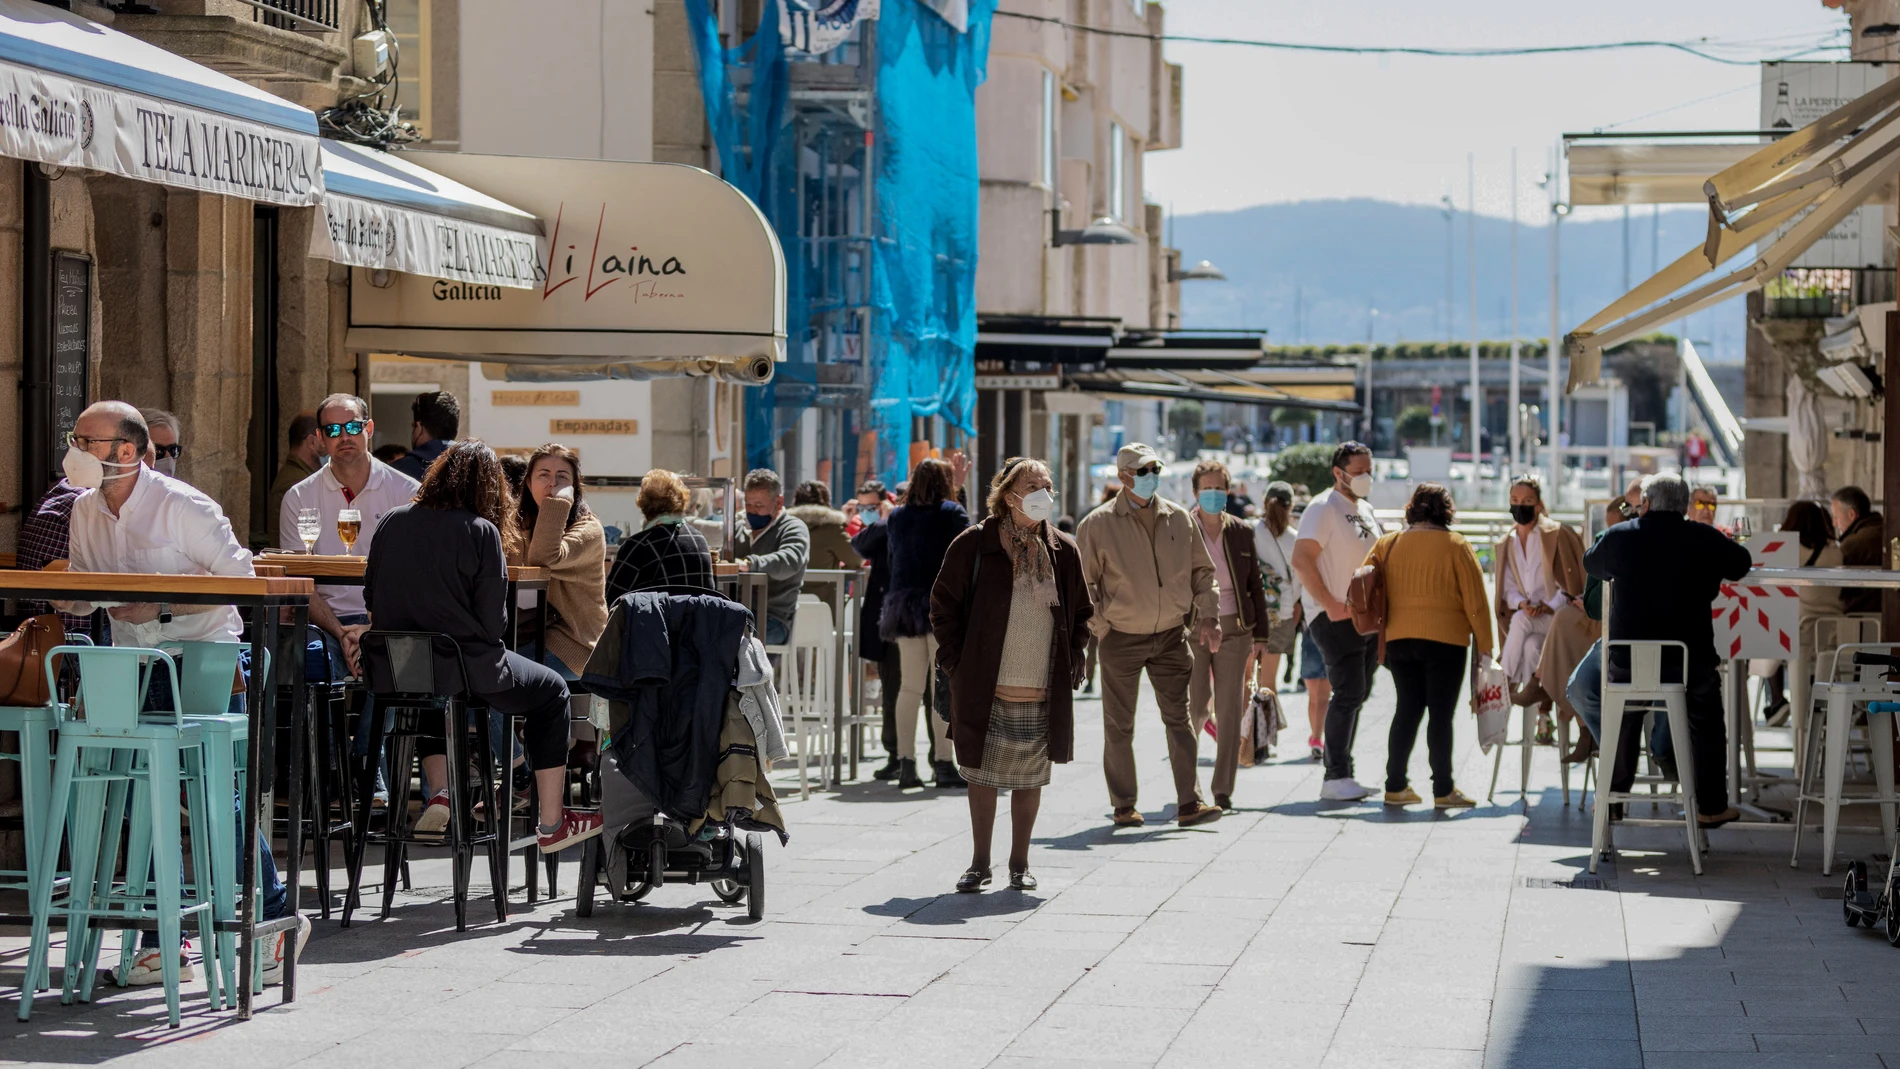 Varias personas pasean por una céntrica calle de Sanxenxo, Pontevedra, Galicia (España)